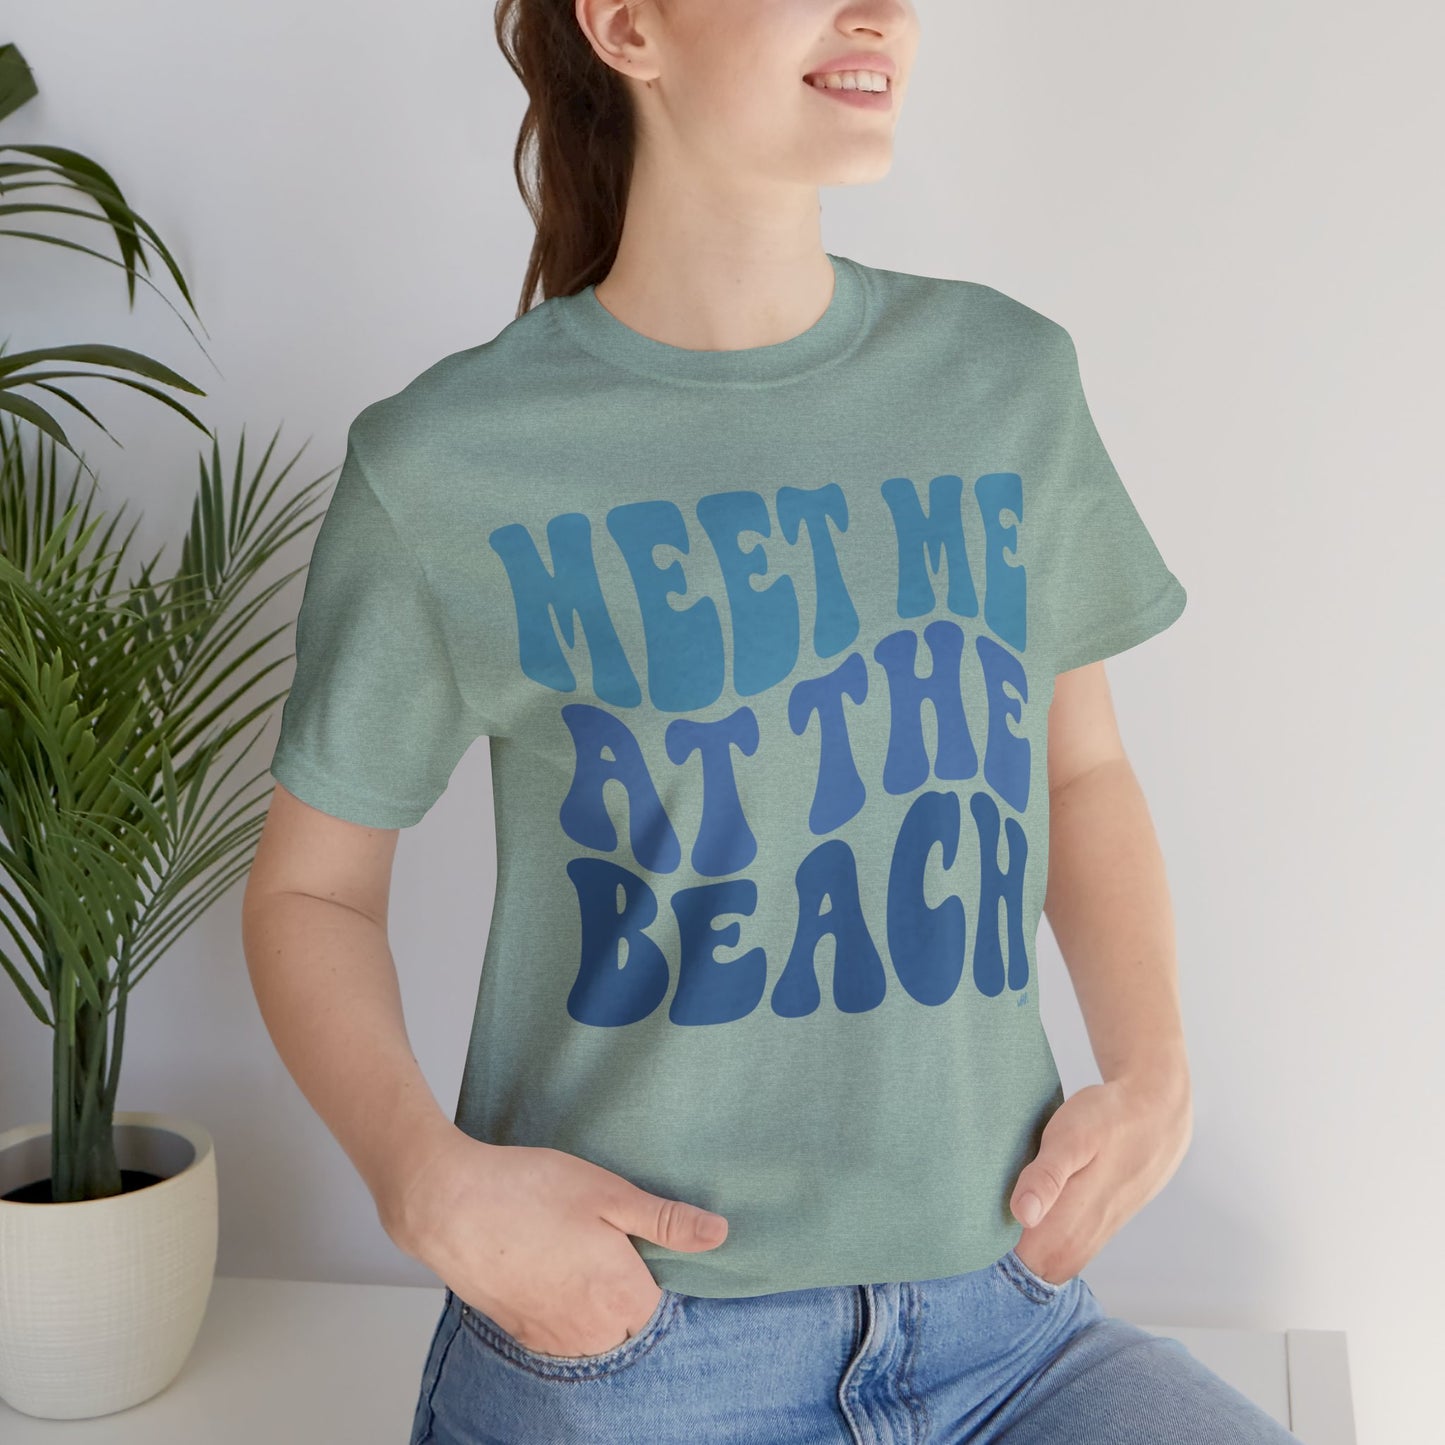 Meet Me At The Beach